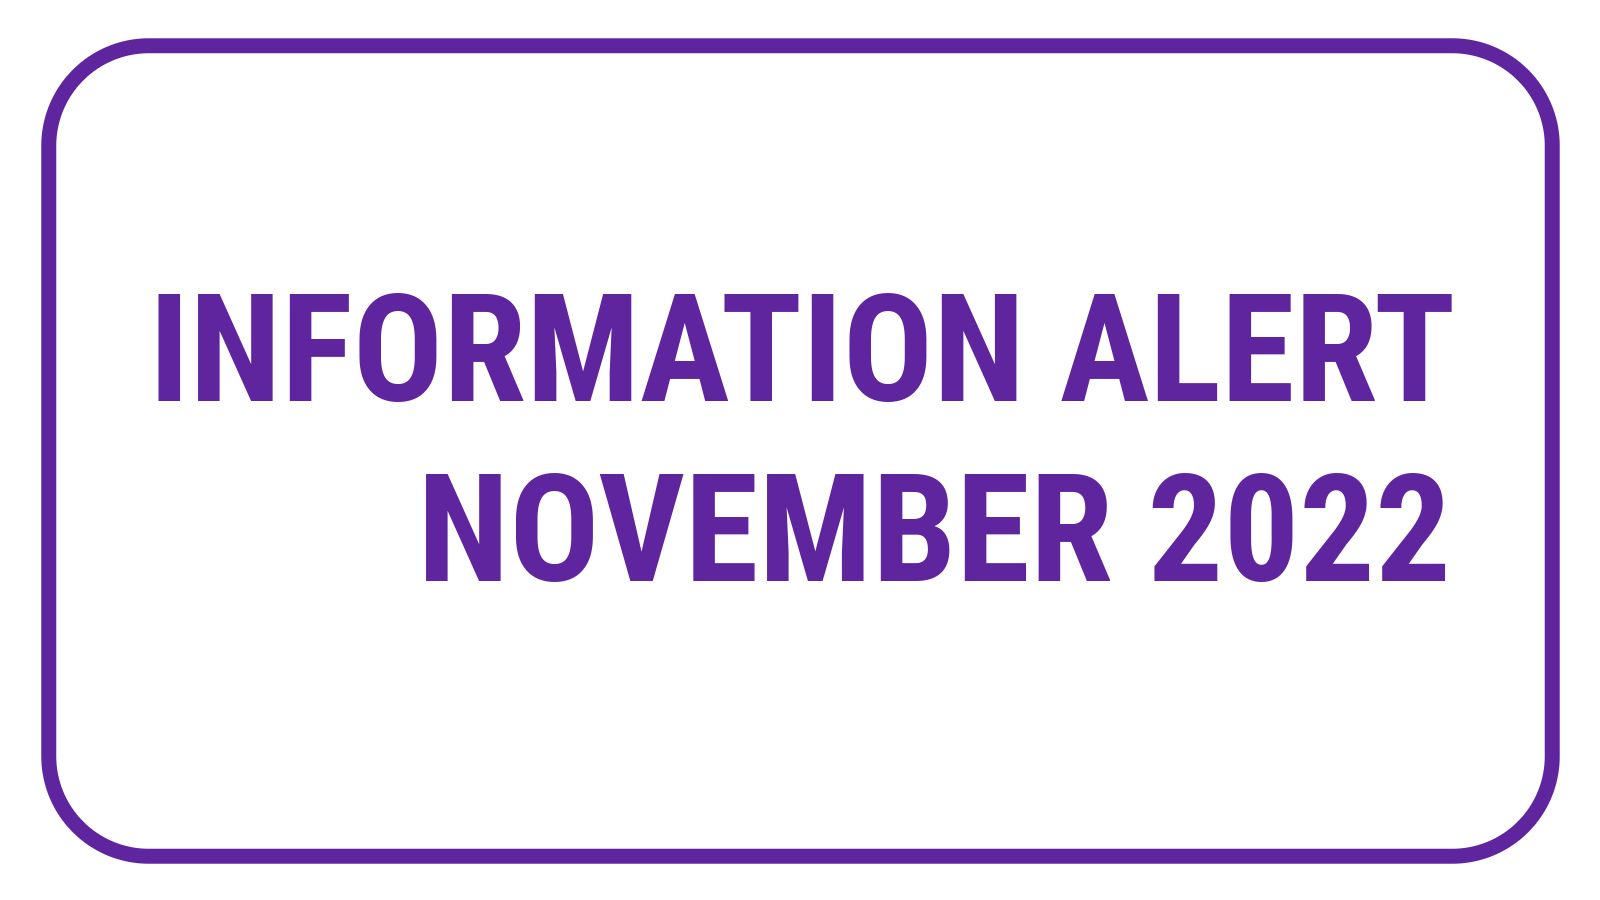 Information Alert November 2022